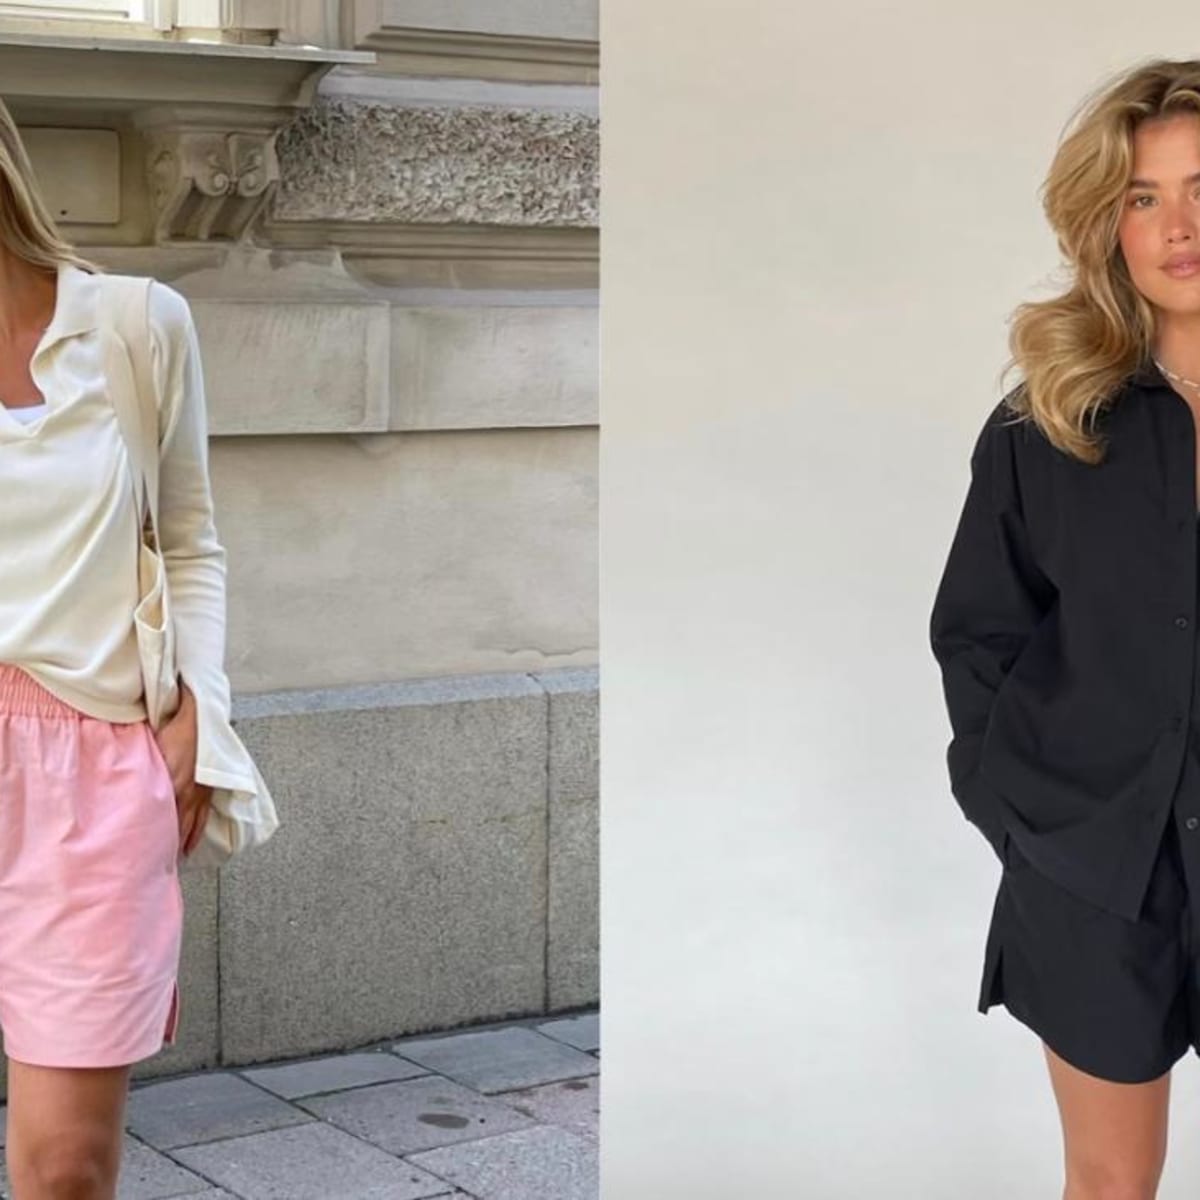 Zara - Boyfriend Shirt and Bralette on Designer Wardrobe